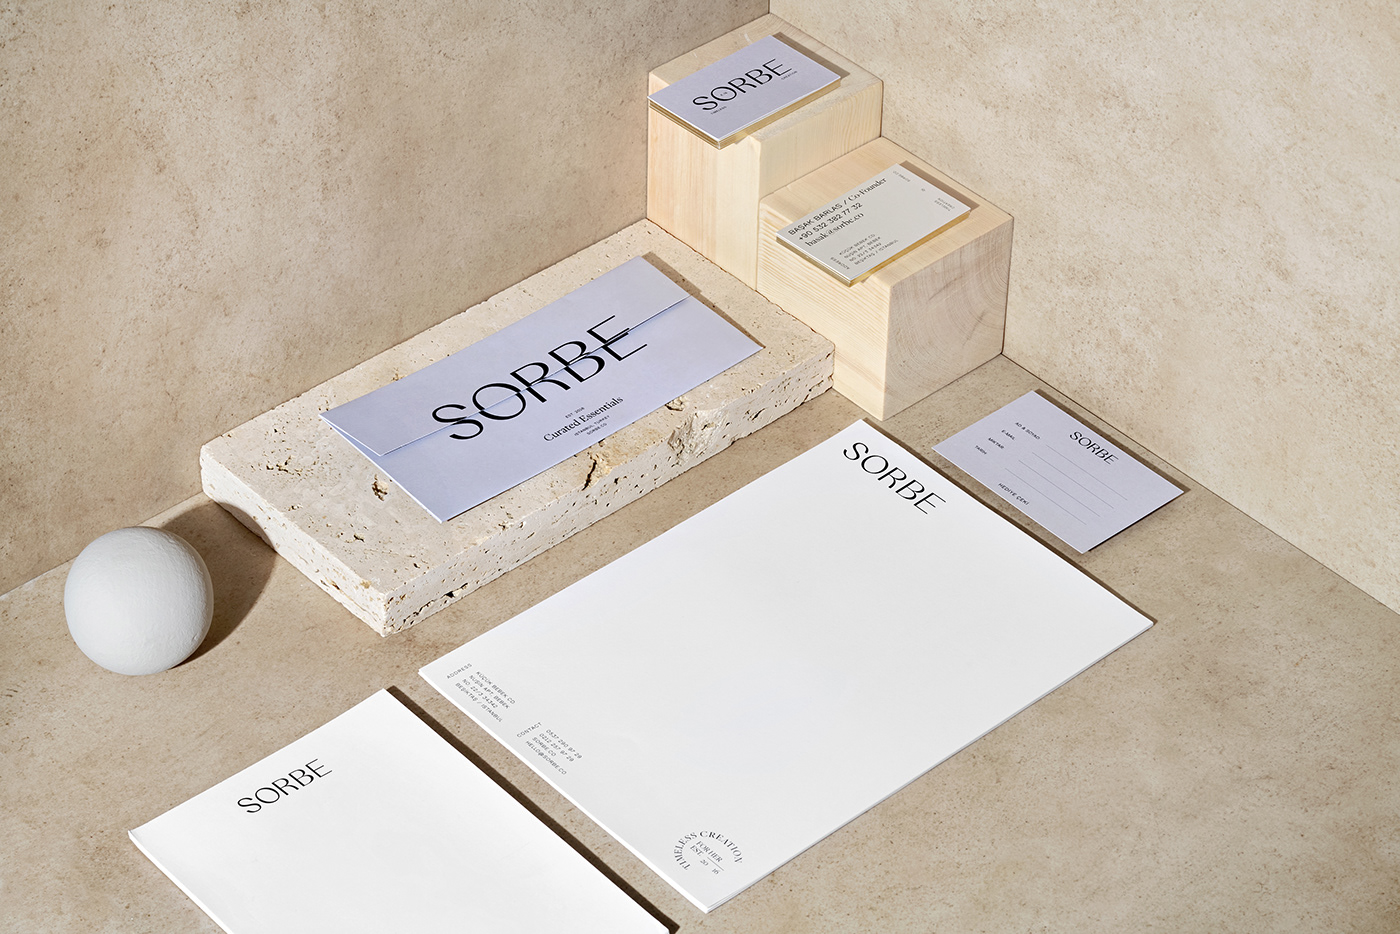 Packaging example #352: SORBE - Branding & Packaging